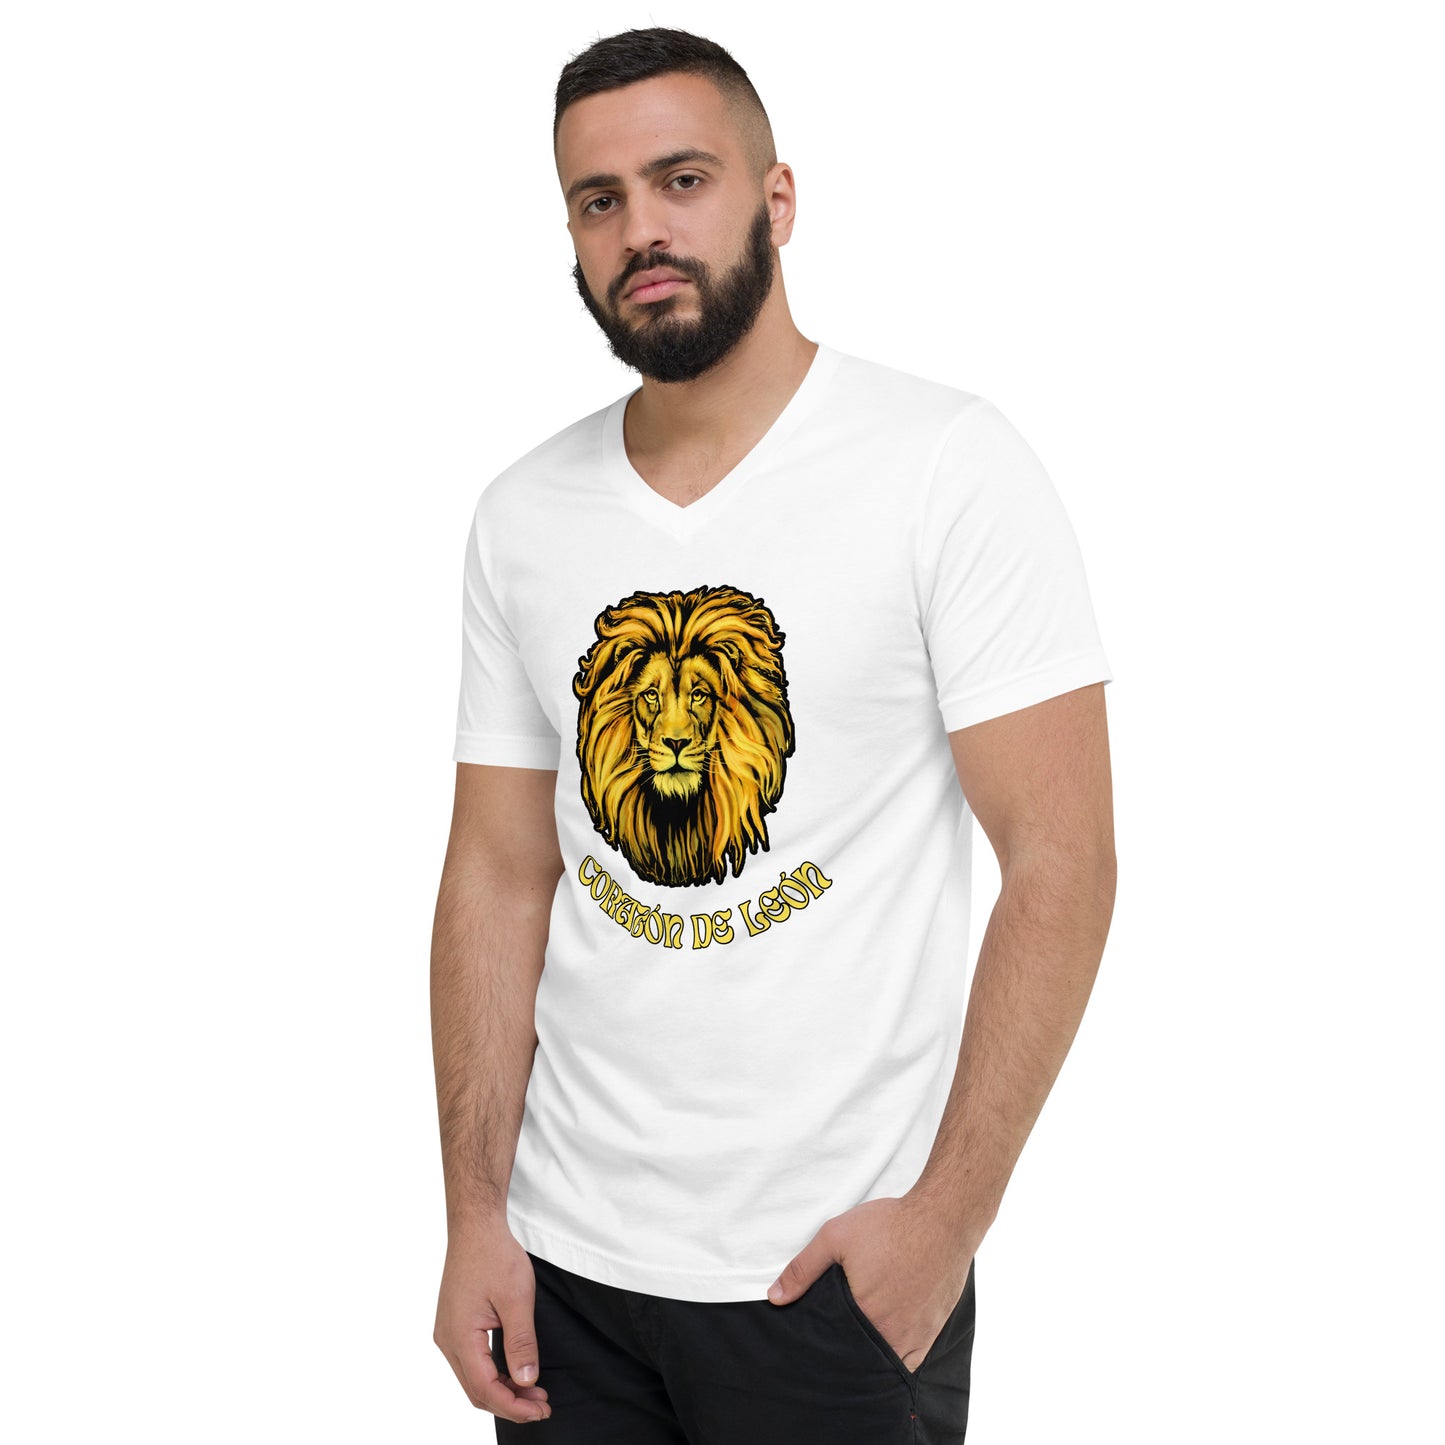 Corazon de leon - camiseta de manga corta, cuello de pico